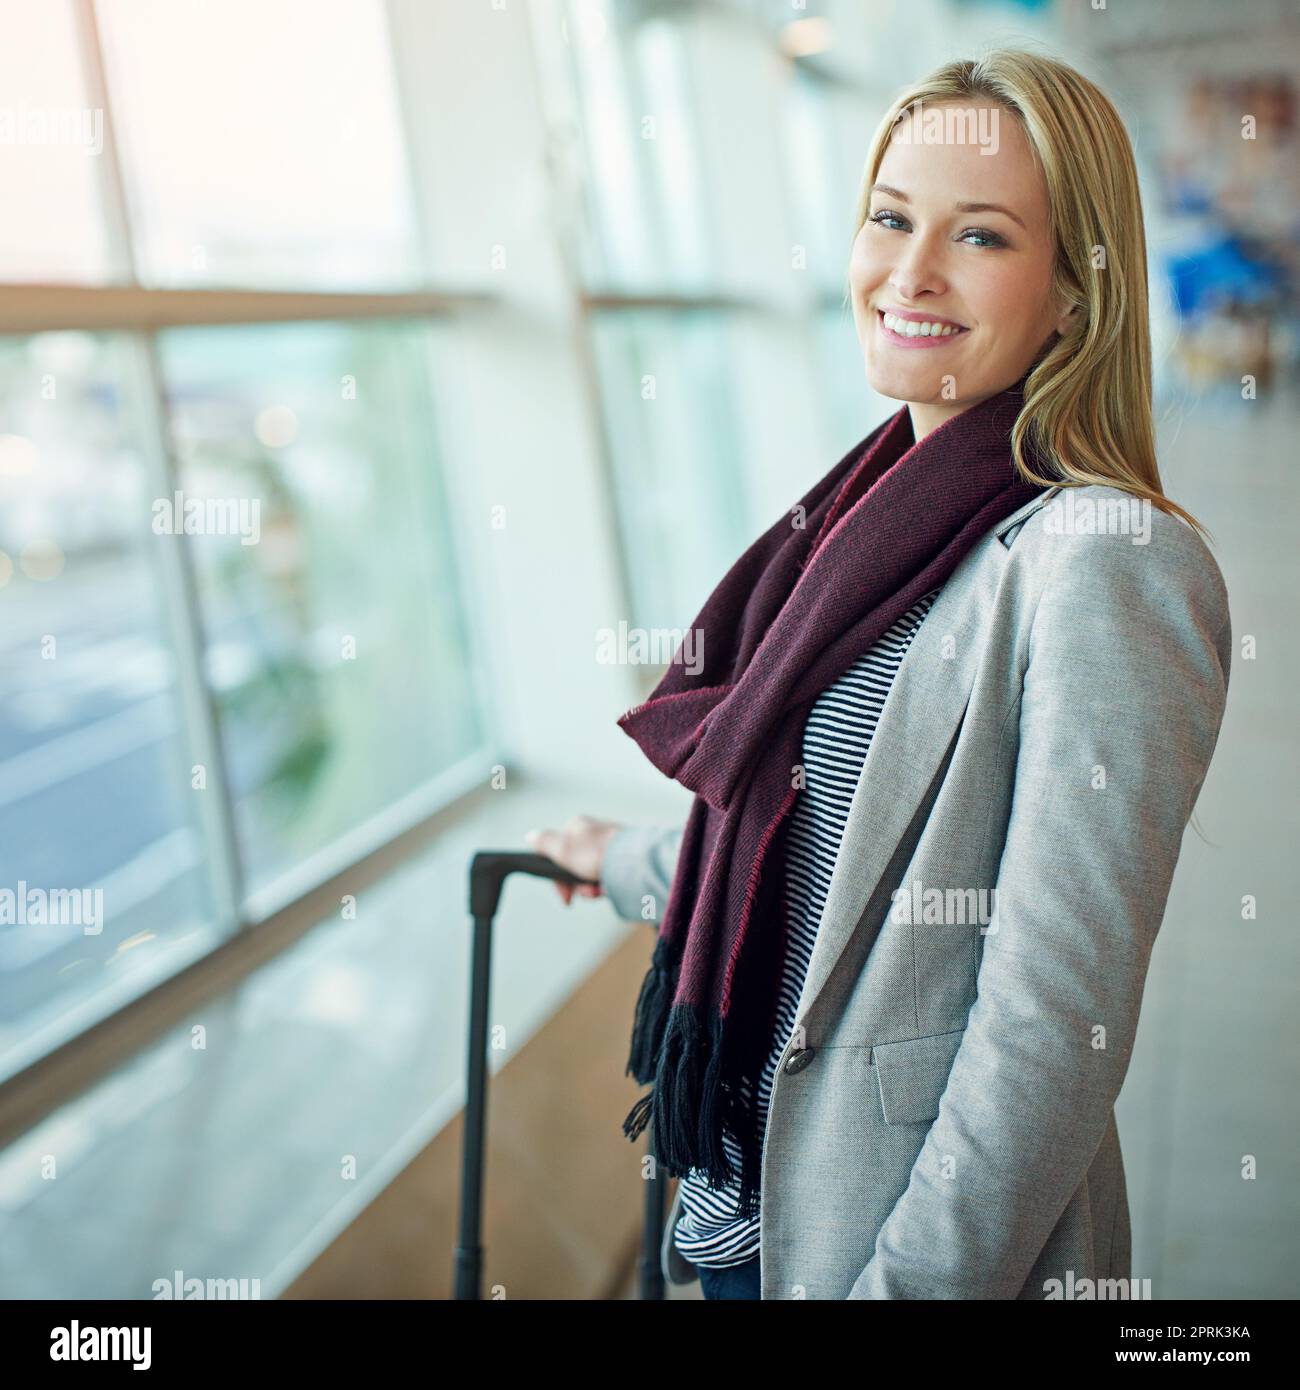 Warten auf Abflug. Porträt einer jungen Frau, die mit ihrem Gepäck auf einem Flughafen steht. Stockfoto